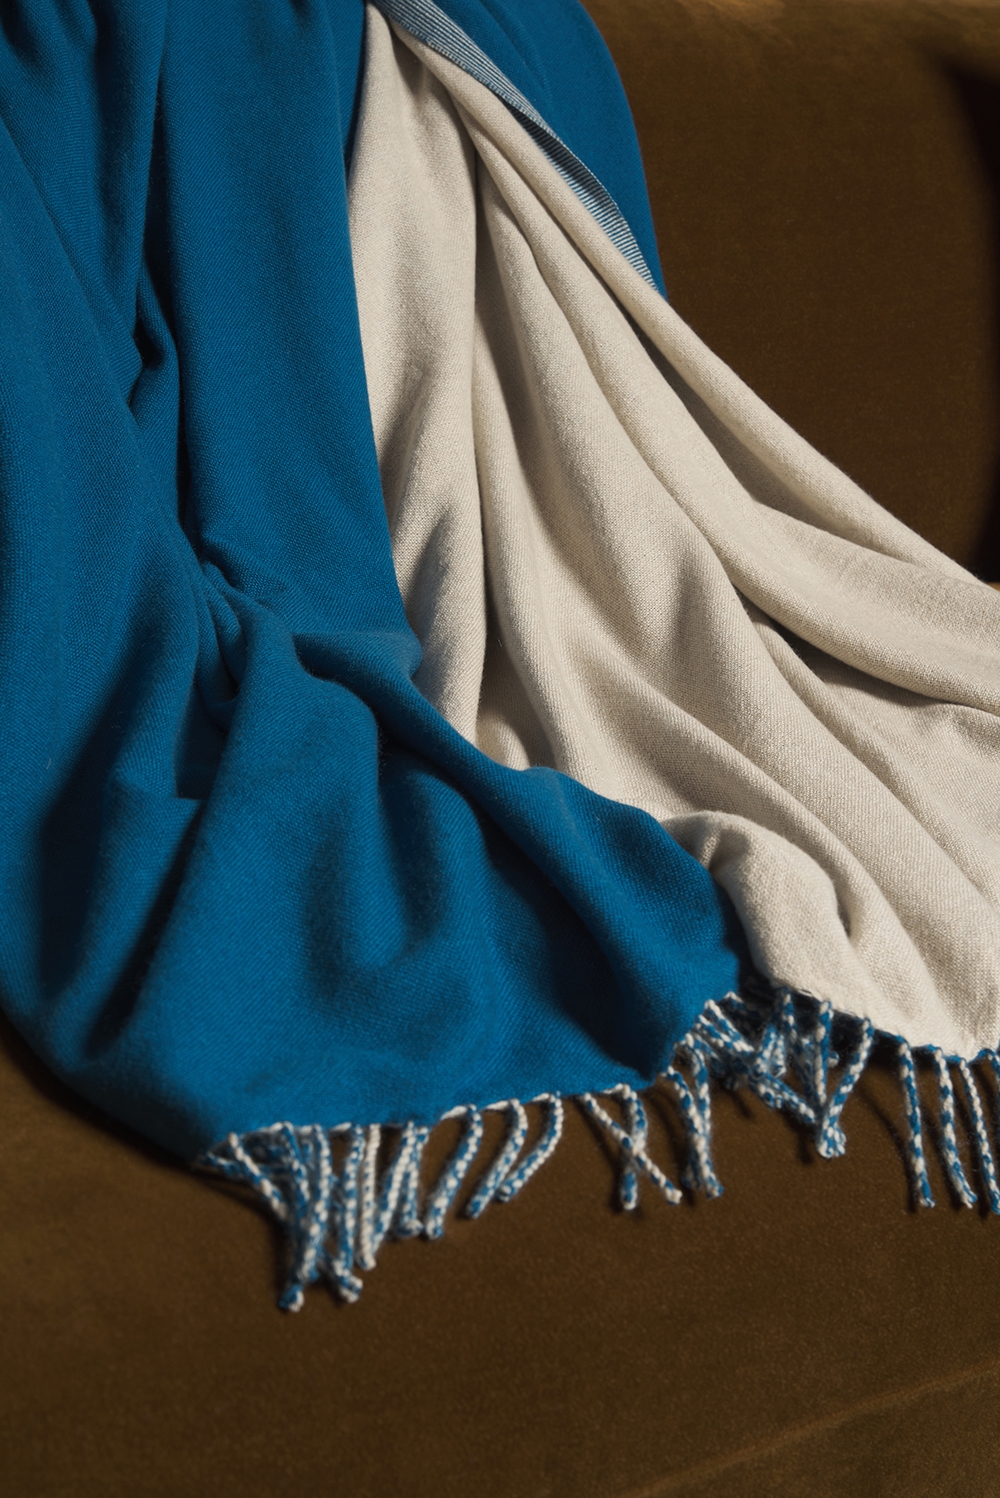 Cashmere accessories blanket amadora 140 x 220 canard blue vintage beige chine 140 x 220 cm